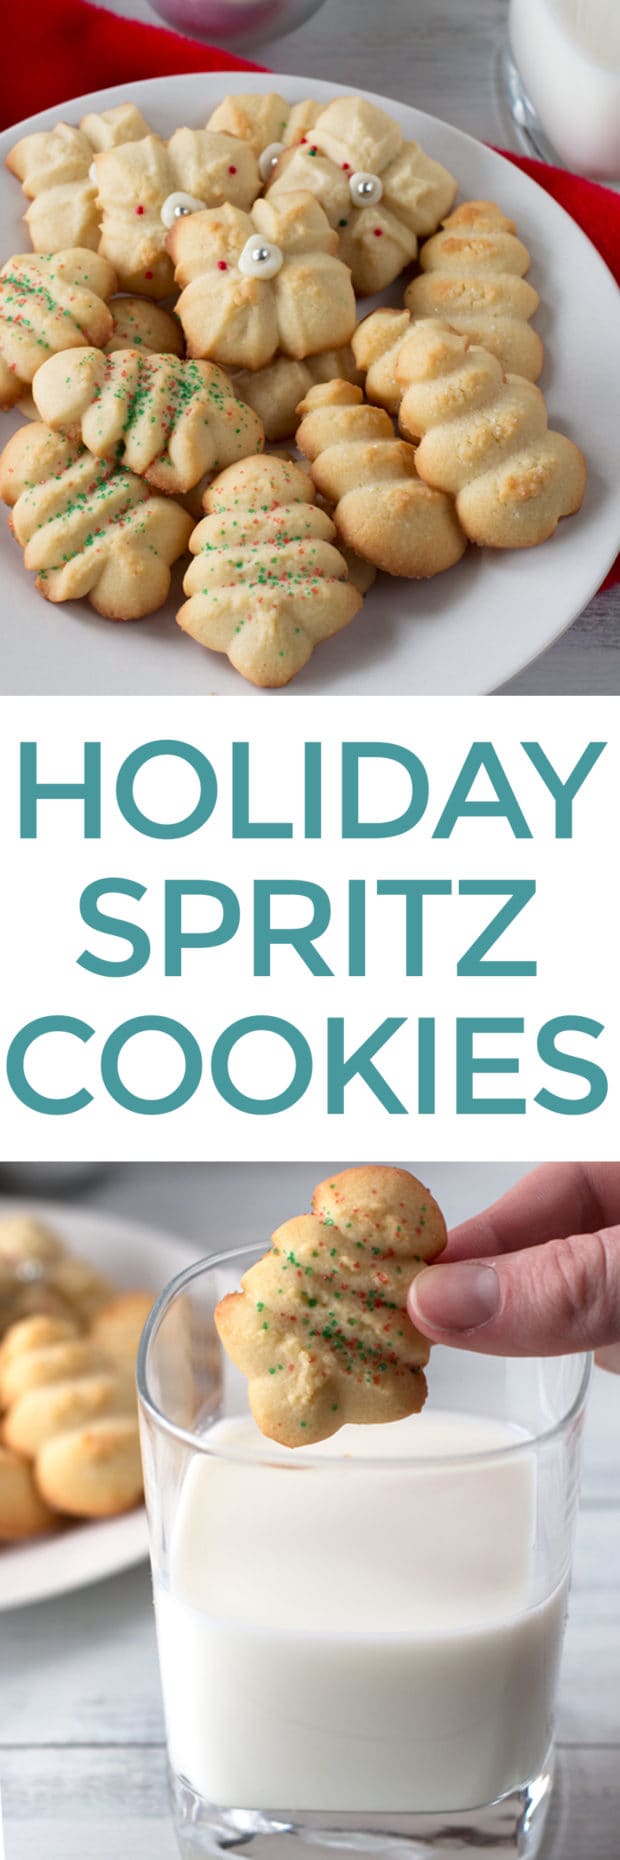 Holiday Spritz Cookies | cakenknife.com